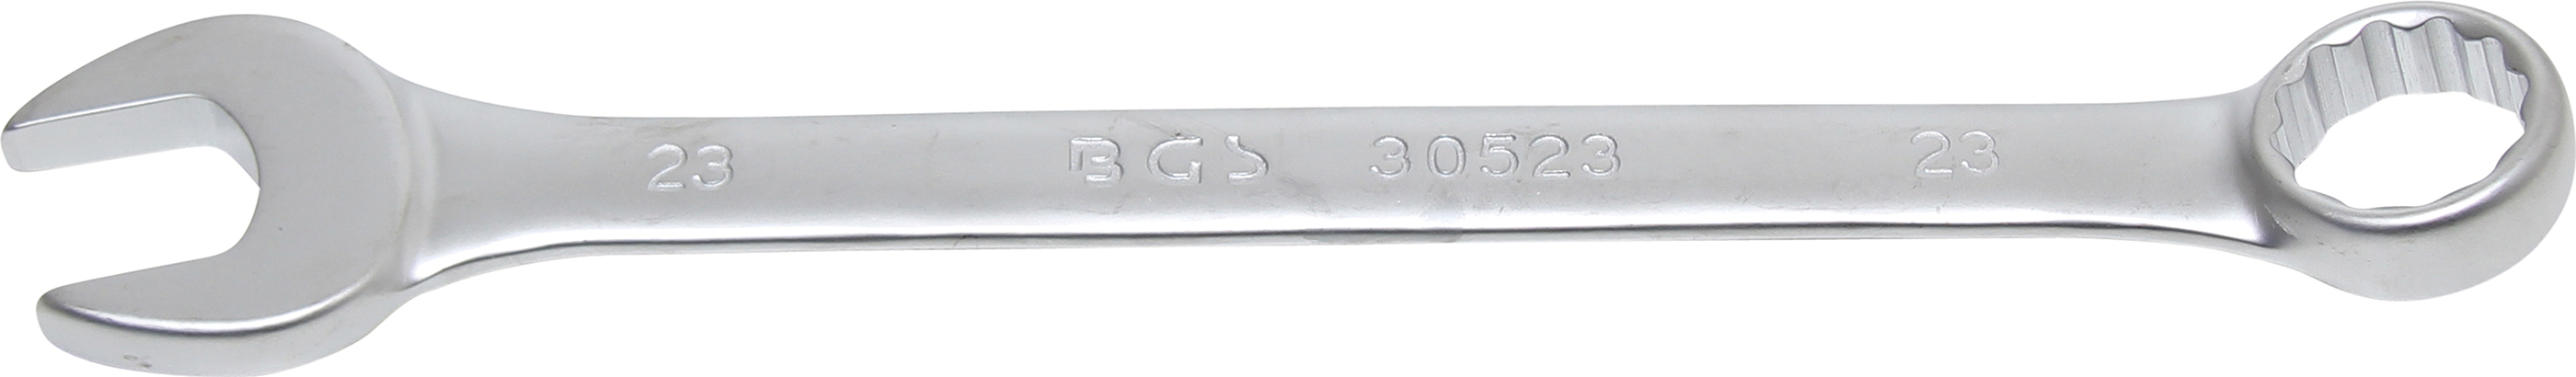 BGS 30523 Cheie combinata, 23 mm